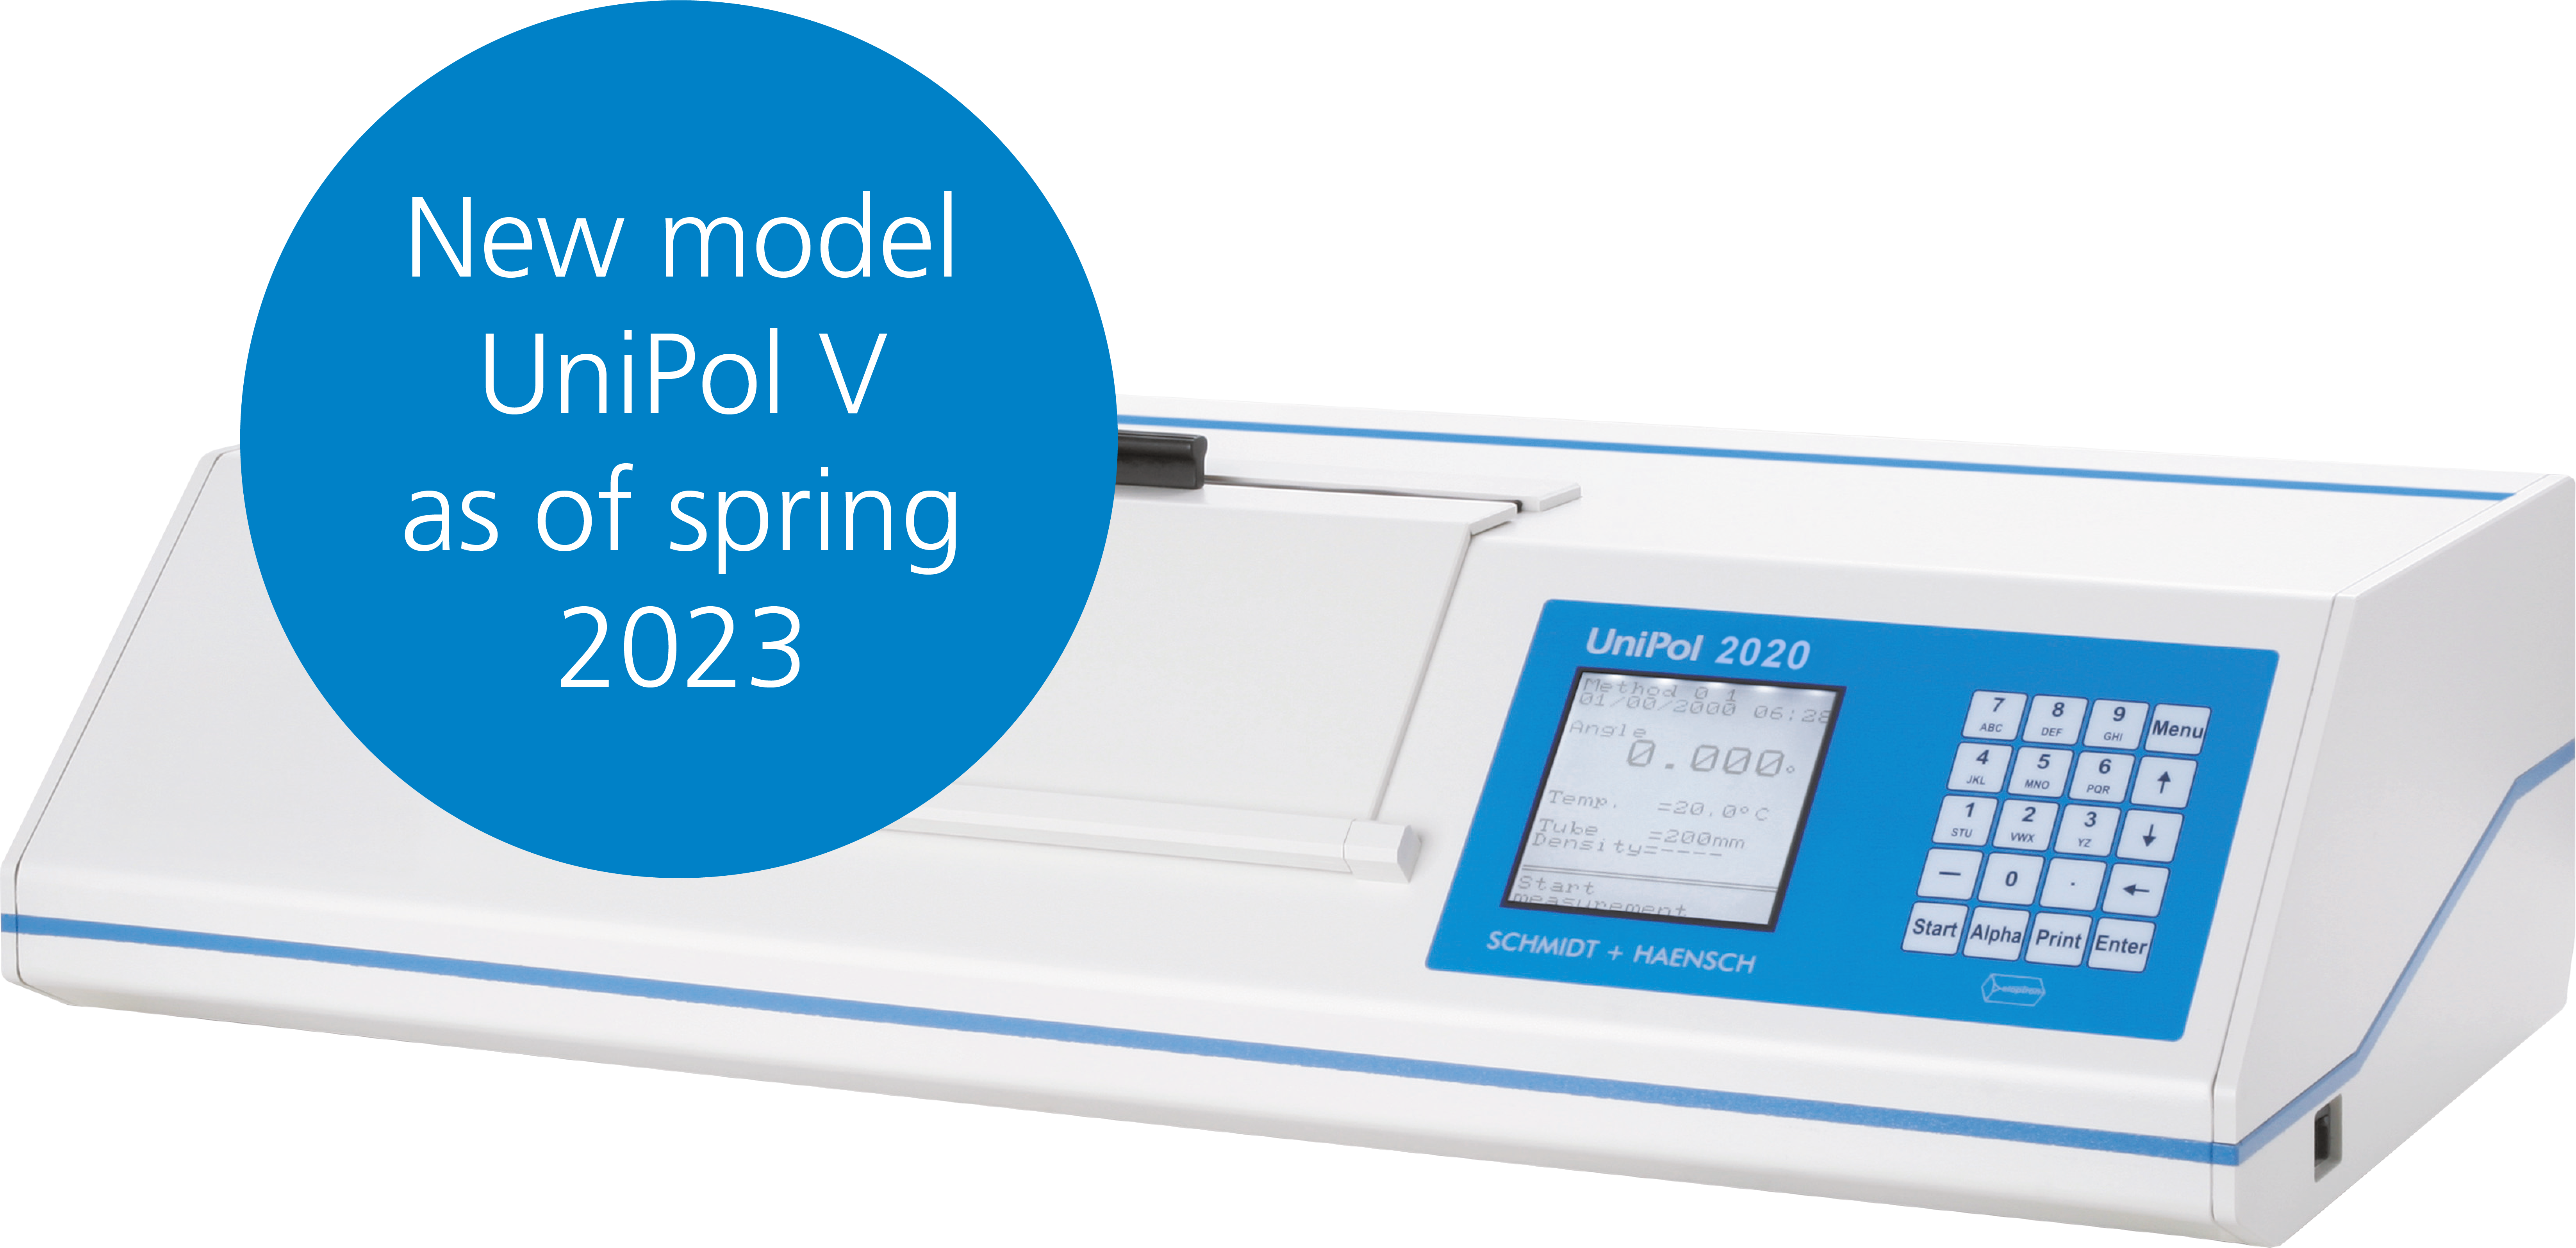 Neues Modell UniPol V Polarimeter von SCHMIDT + HAENSCH ab Frühjahr 2023 erhältlich